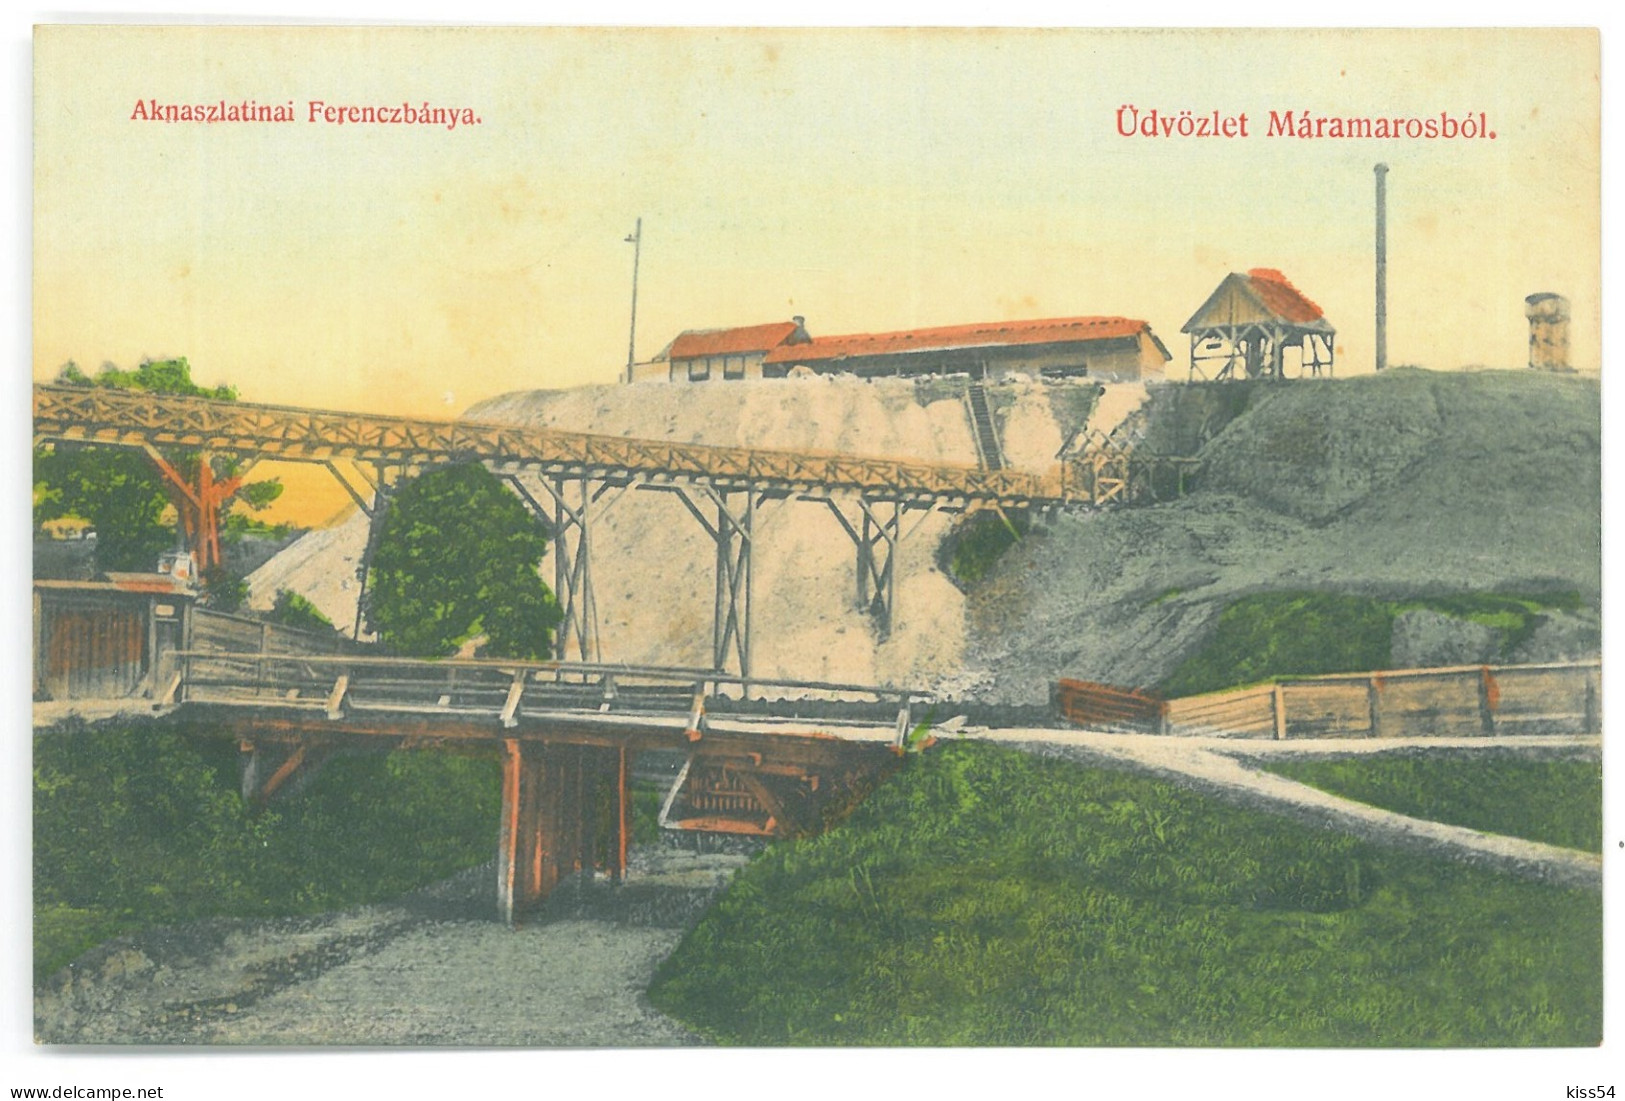 RO 40 - 25162 SIGHET, Maramures, Mine, Romania - Old Postcard - Unused - Romania